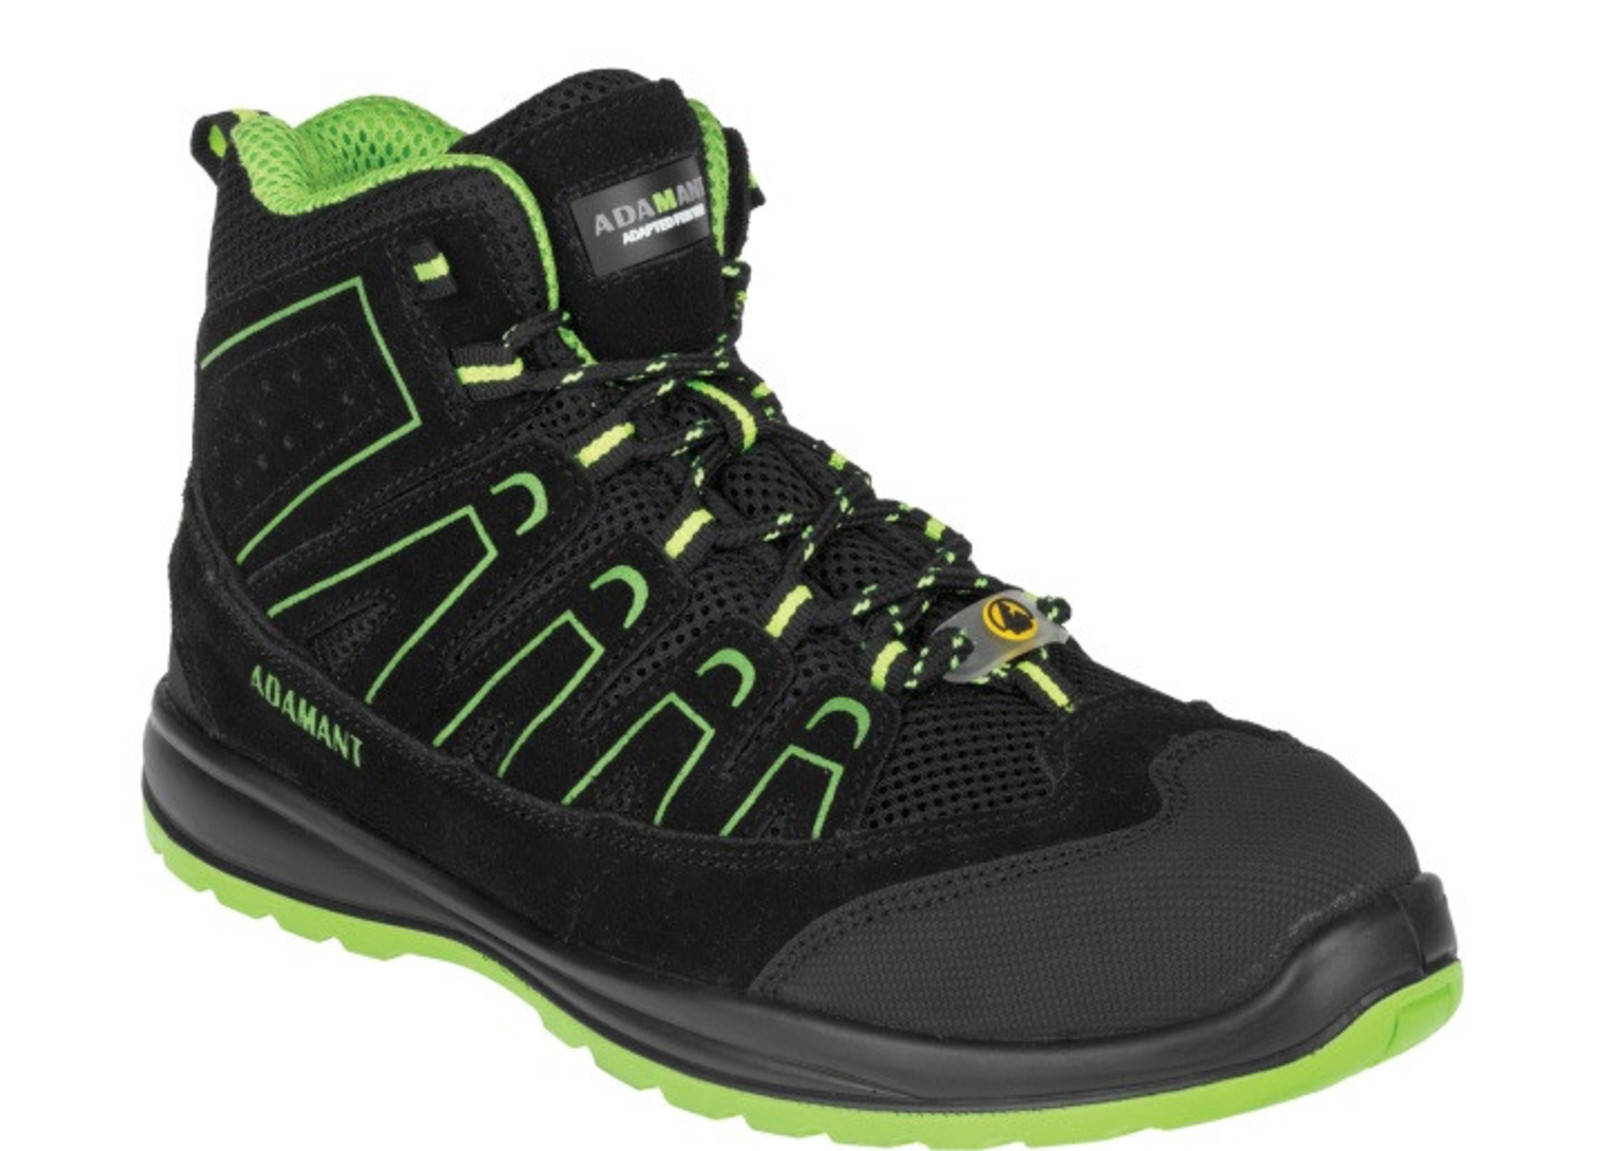 Bezpečnostná obuv Adamant Alegro S1P ESD - veľkosť: 39, farba: čierna/zelená